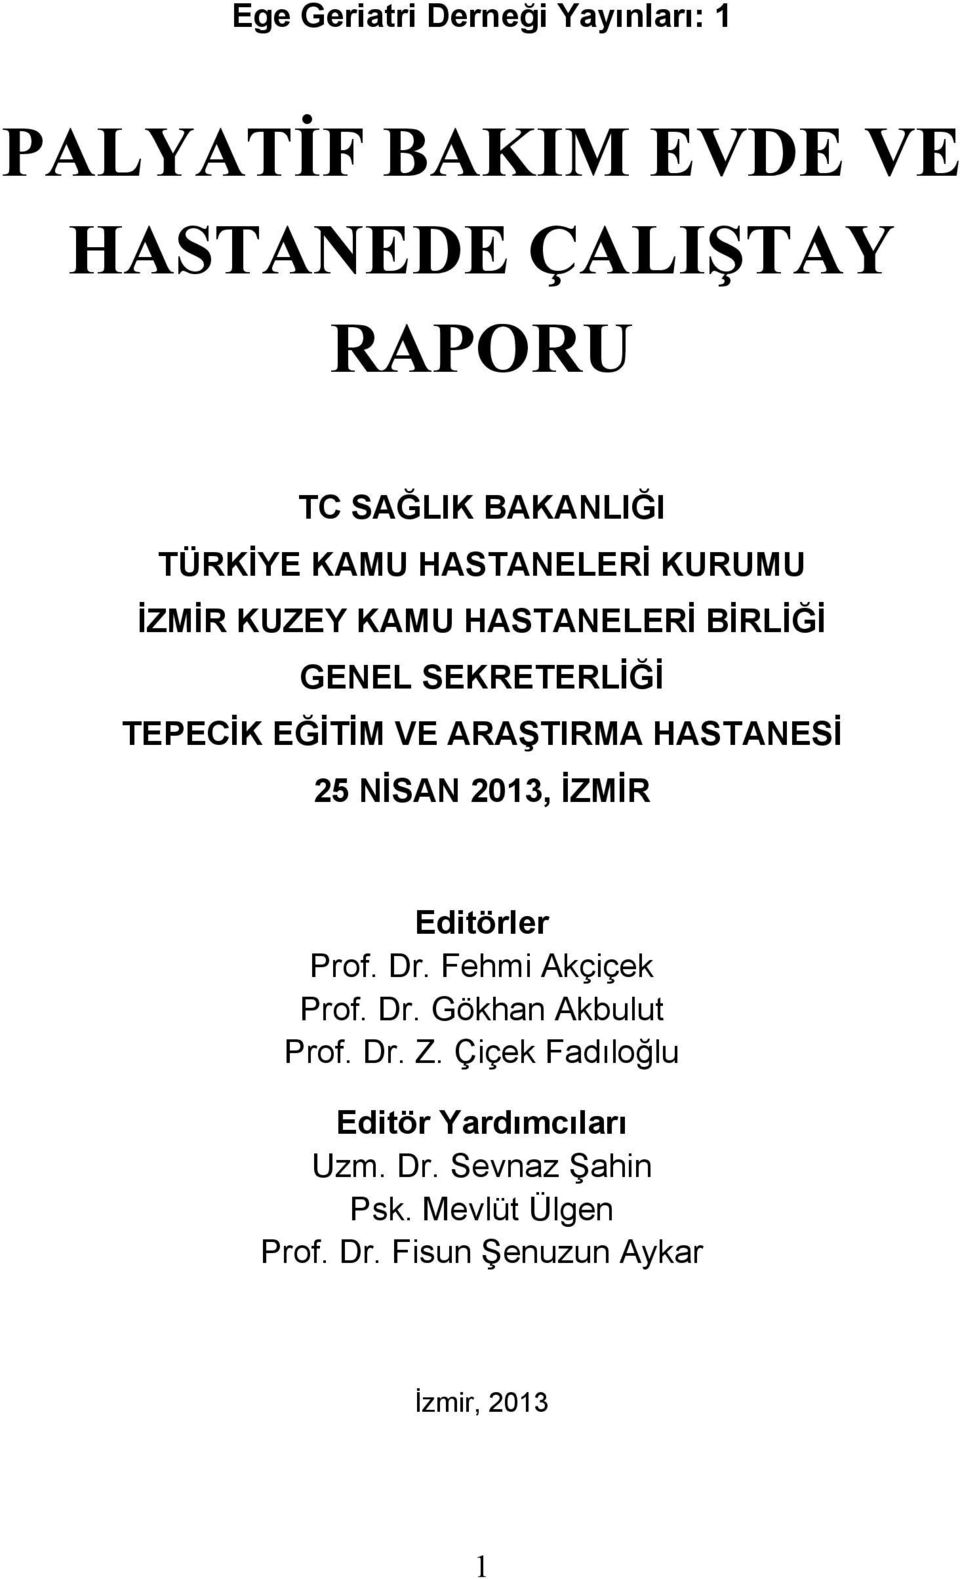 ARAŞTIRMA HASTANESİ 5 NİSAN 013, İZMİR Editörler Prof. Dr. Fehmi Akçiçek Prof. Dr. Gökhan Akbulut Prof. Dr. Z.